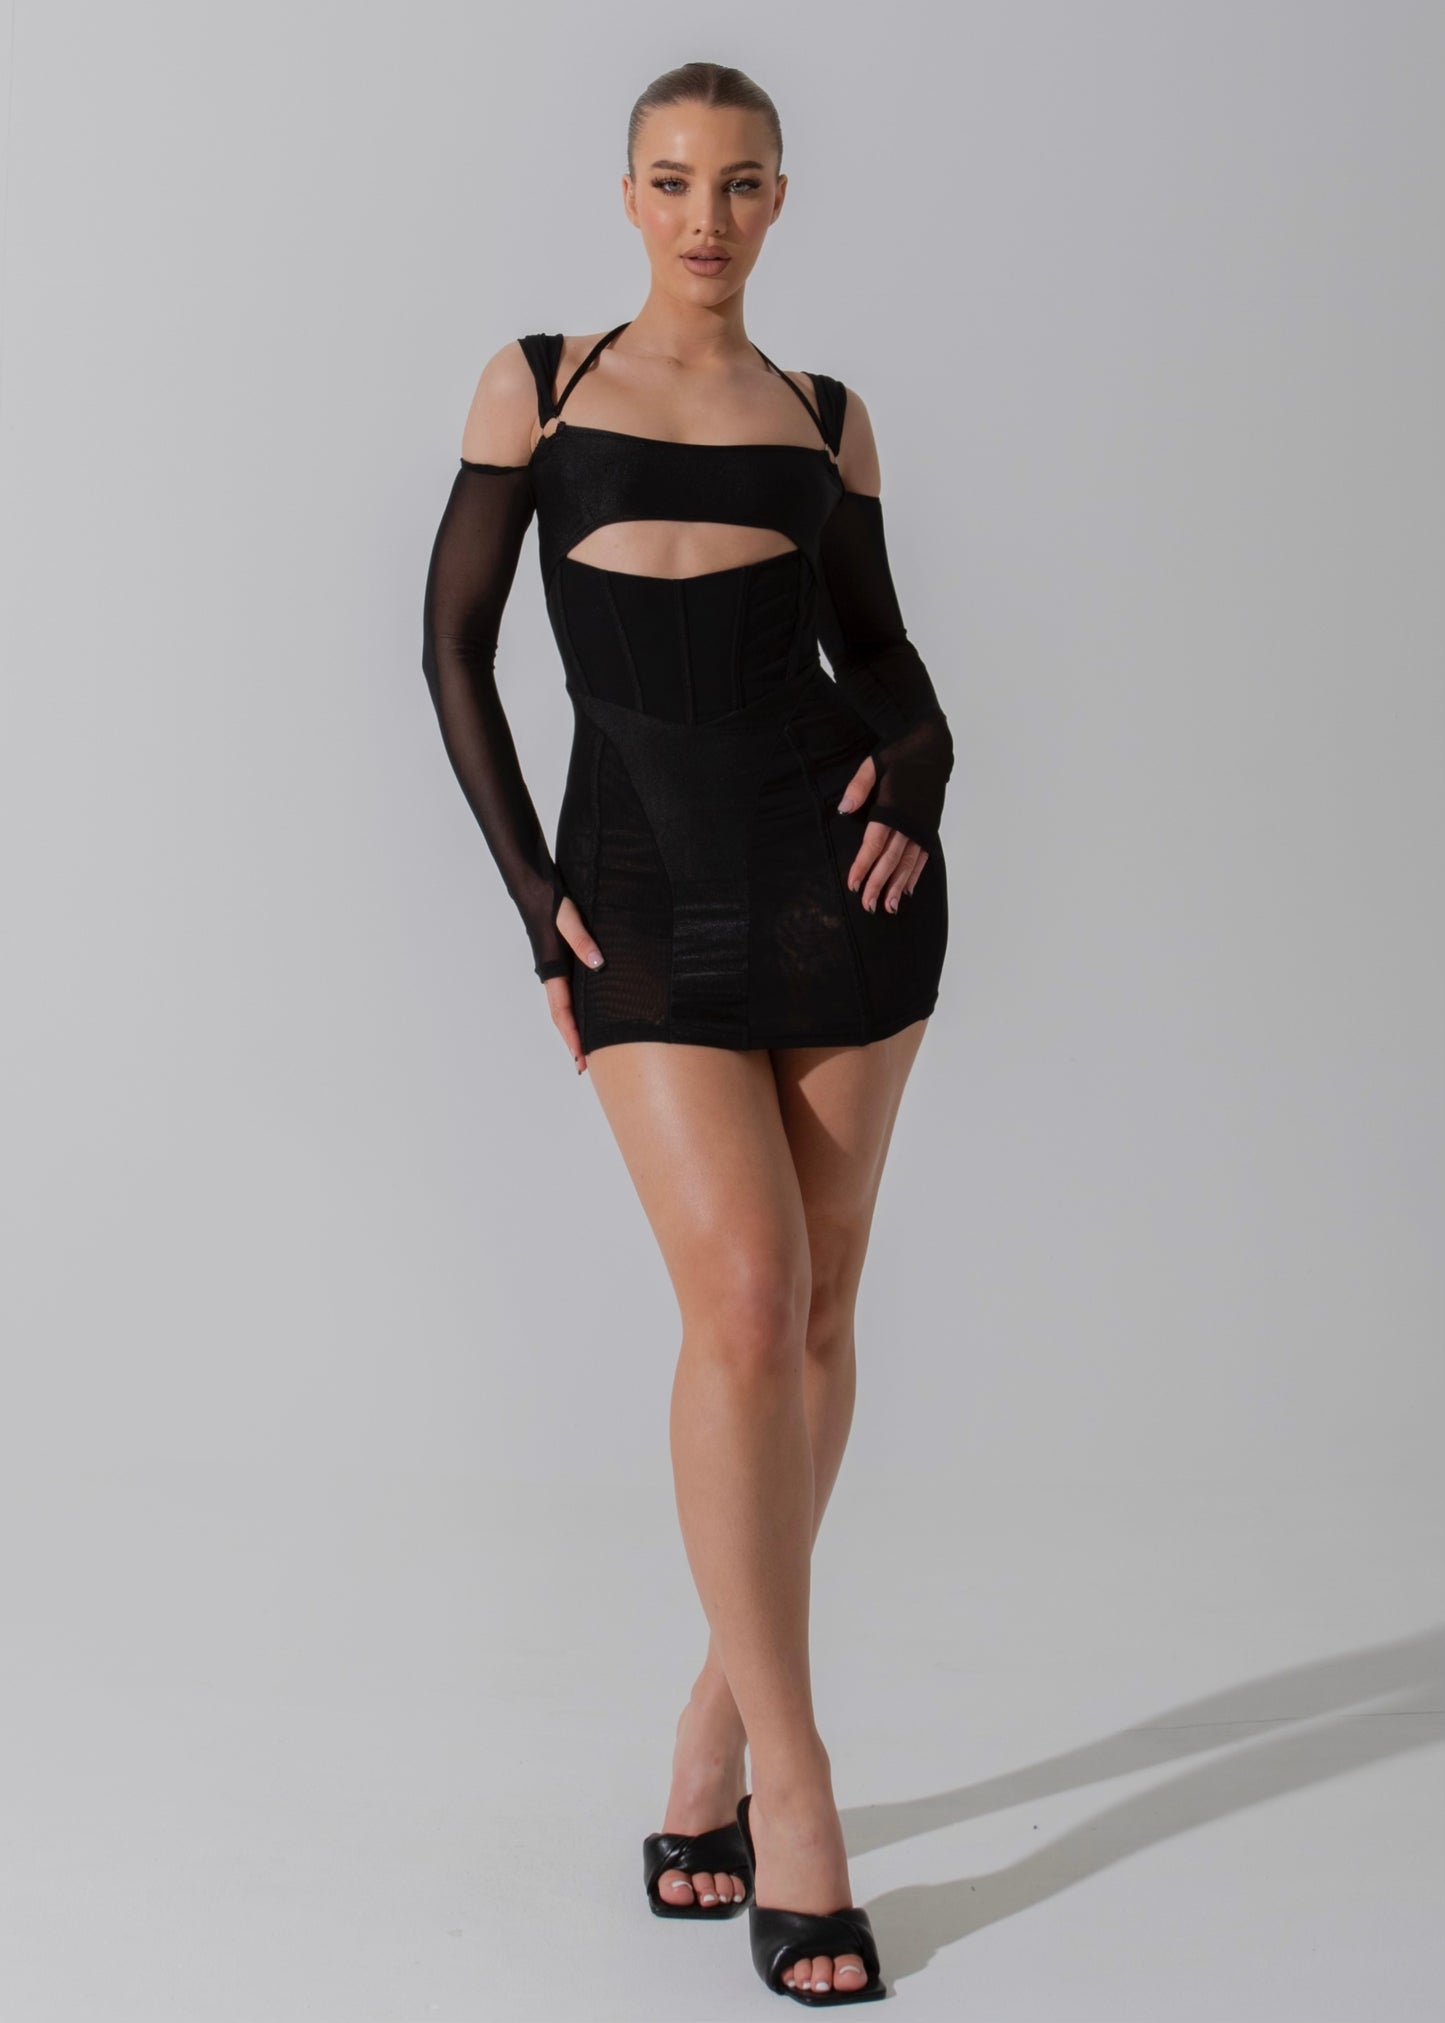 AILSA - Black Mesh Mini Dress